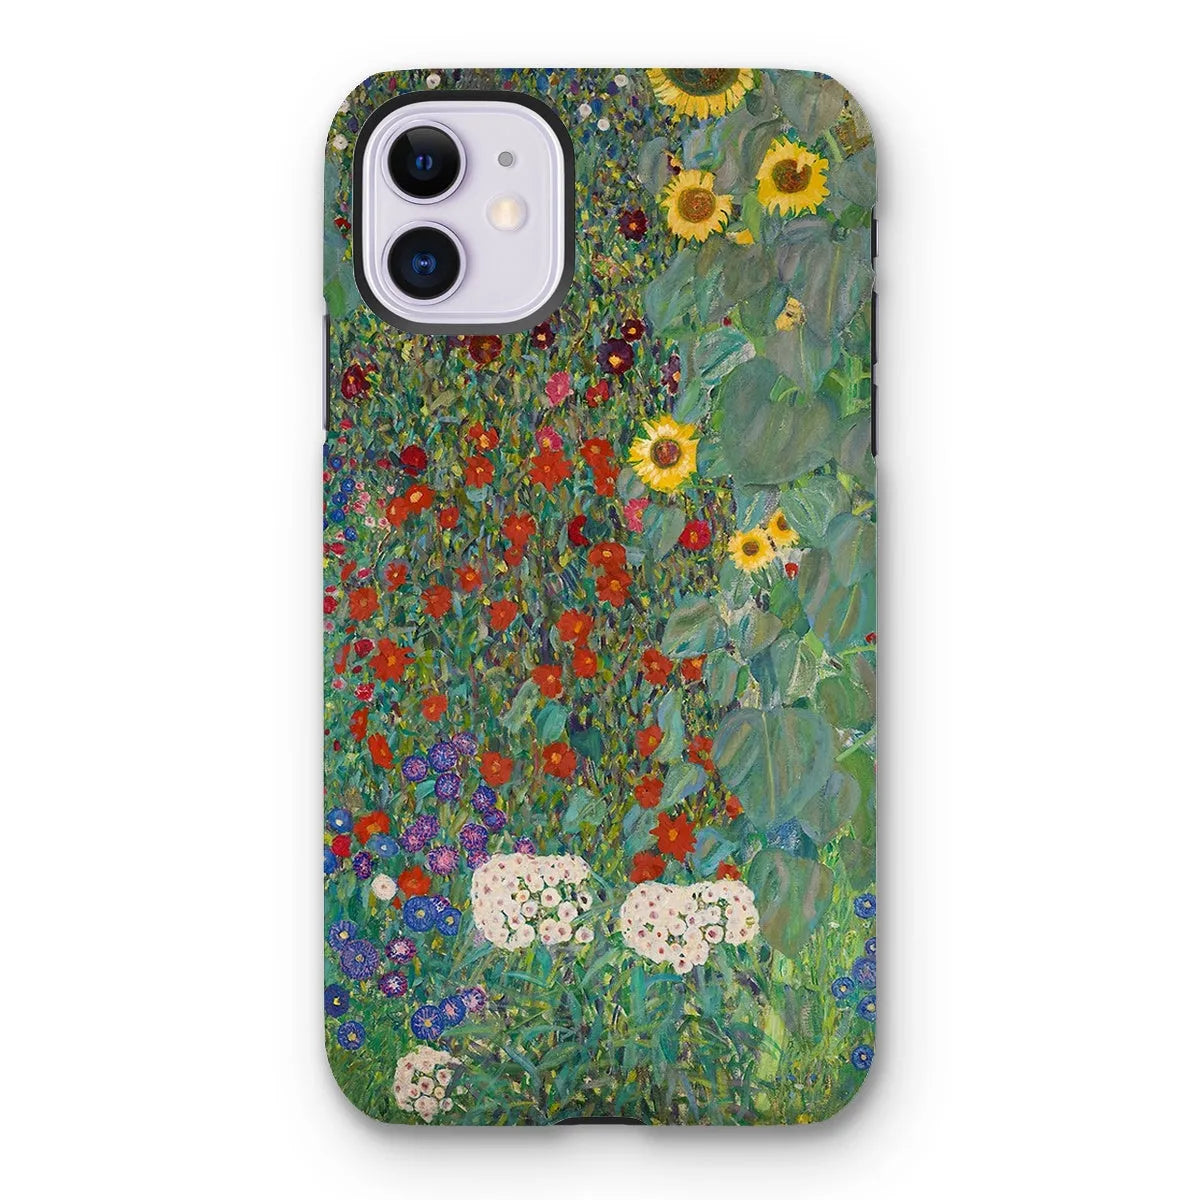 Farm Garden With Sunflowers Art Phone Case - Gustav Klimt - Iphone 11 / Matte - Mobile Phone Cases - Aesthetic Art